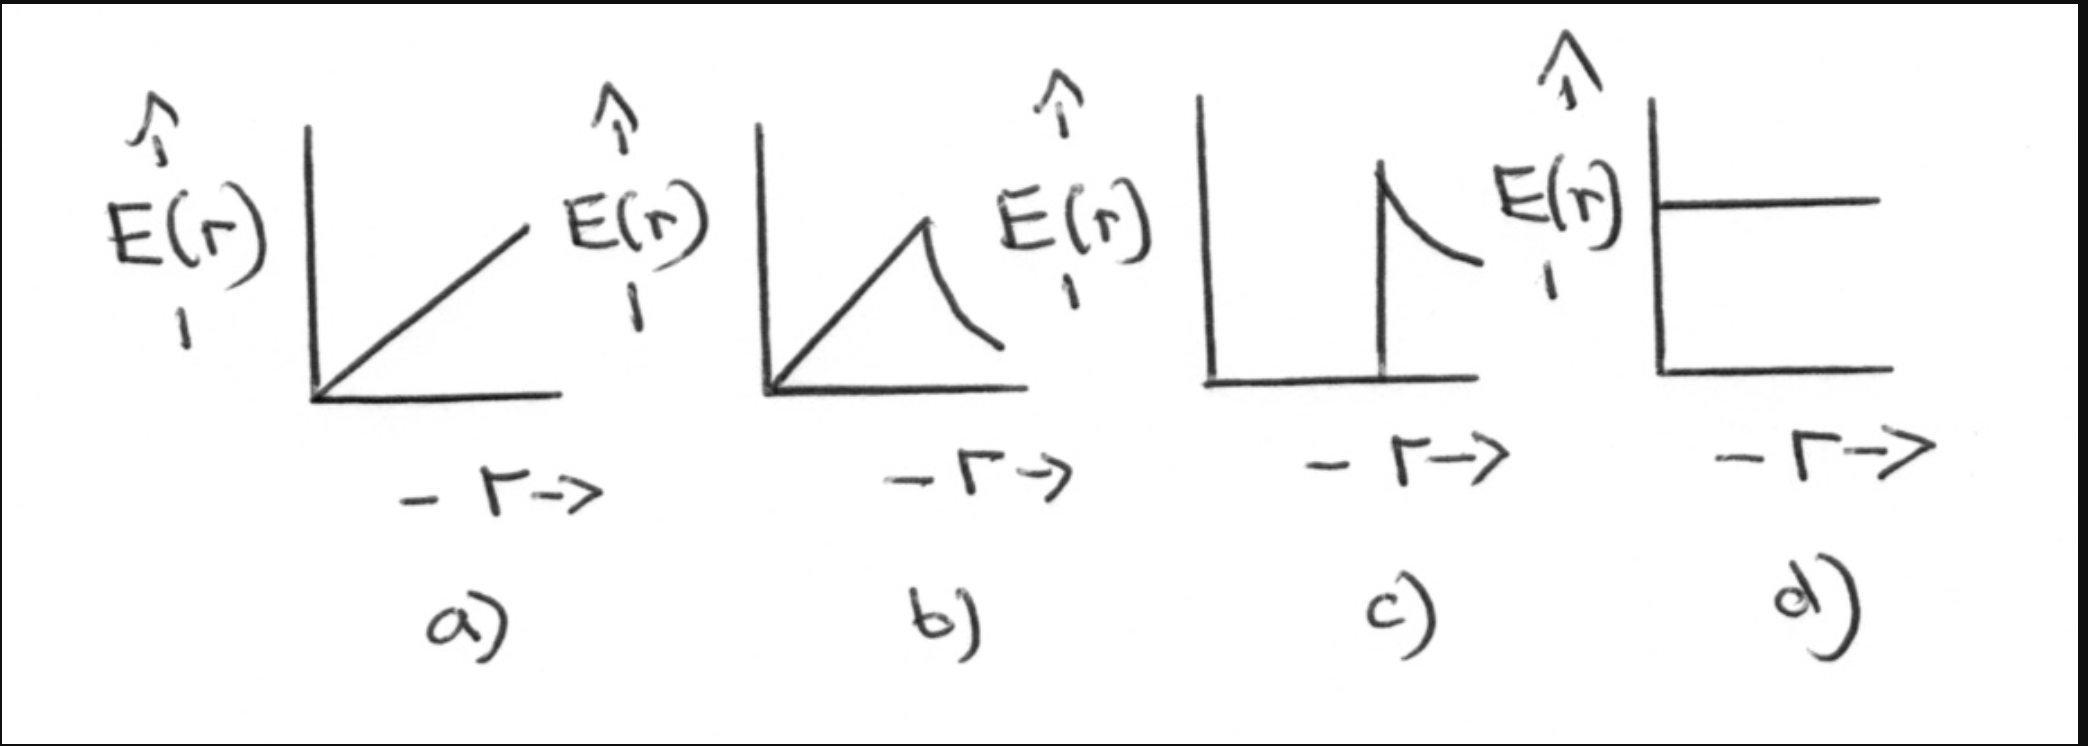 E(r)
Elr)
Eln
E(G)
Elr)
- F->
a)
b)
c)
